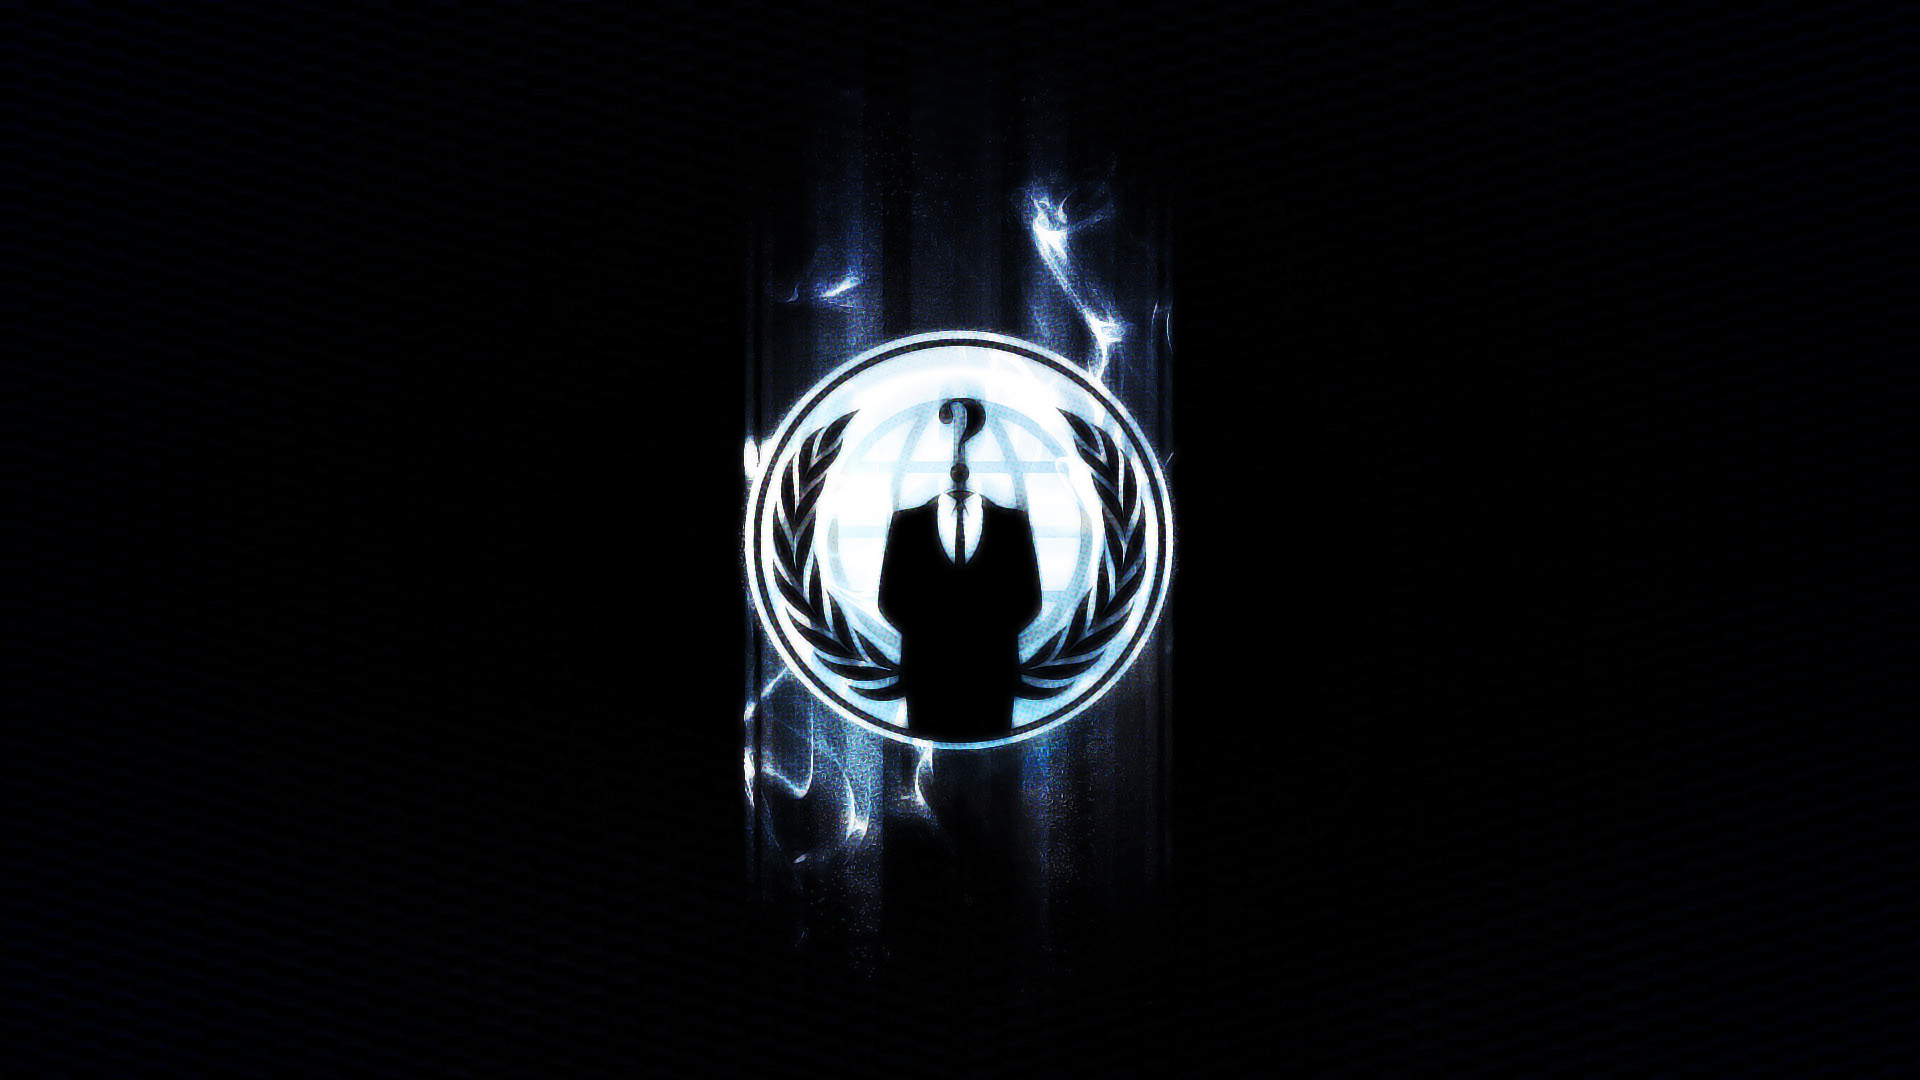 Anonymous là một hình tượng nổi tiếng trong cộng đồng mạng. Hãy cùng trải nghiệm những hình ảnh độc đáo, tìm hiểu về những truyền thông và hoạt động gây quỹ của những người ẩn danh này. 